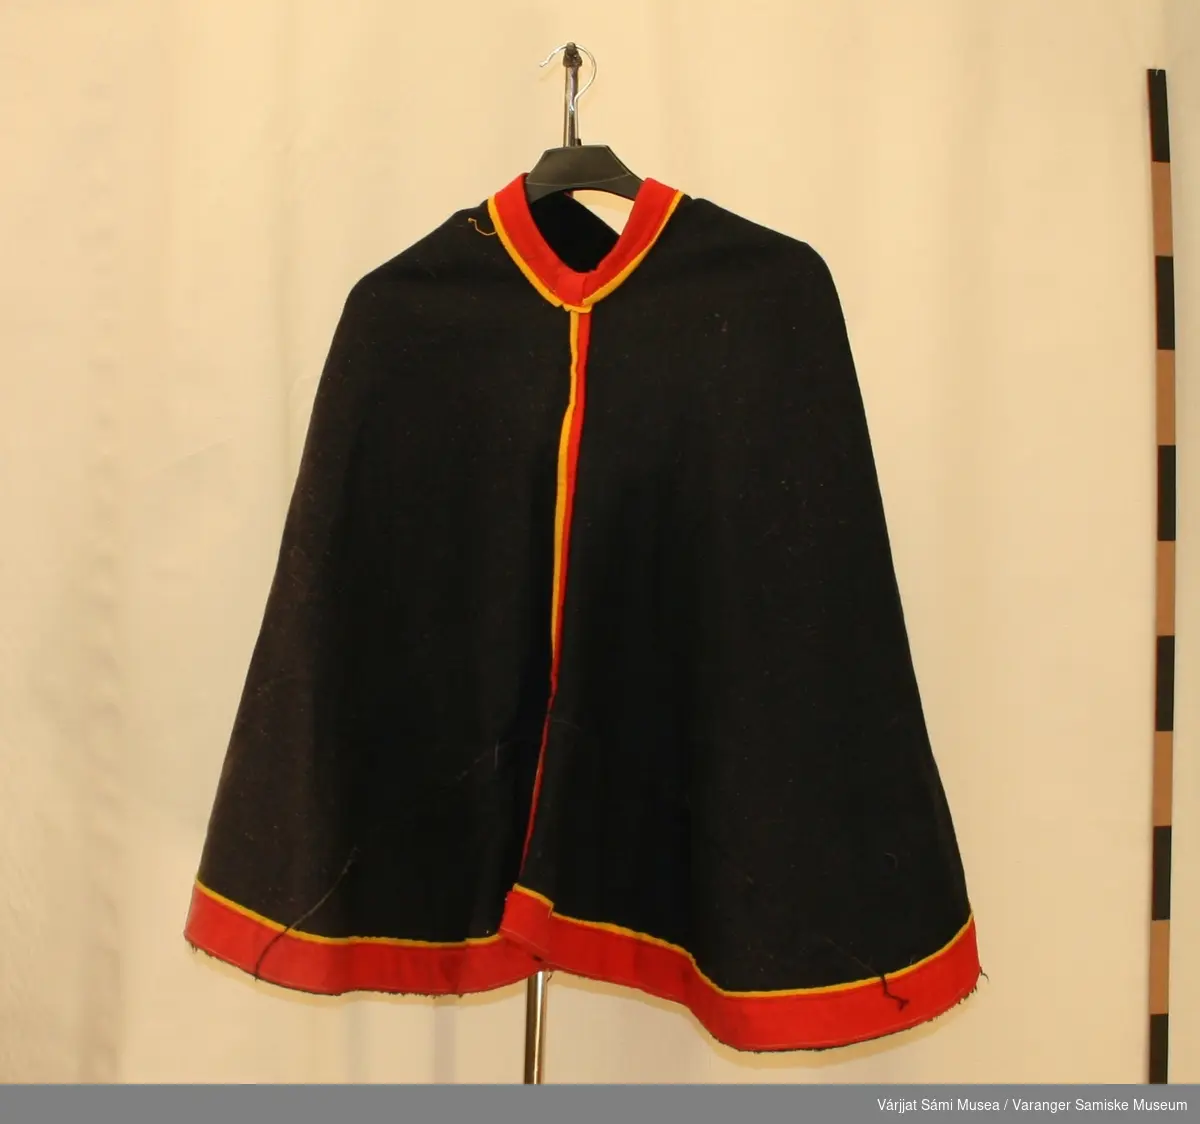 Luhkka sydd av svart klede, pyntet med rødt og gult klede.